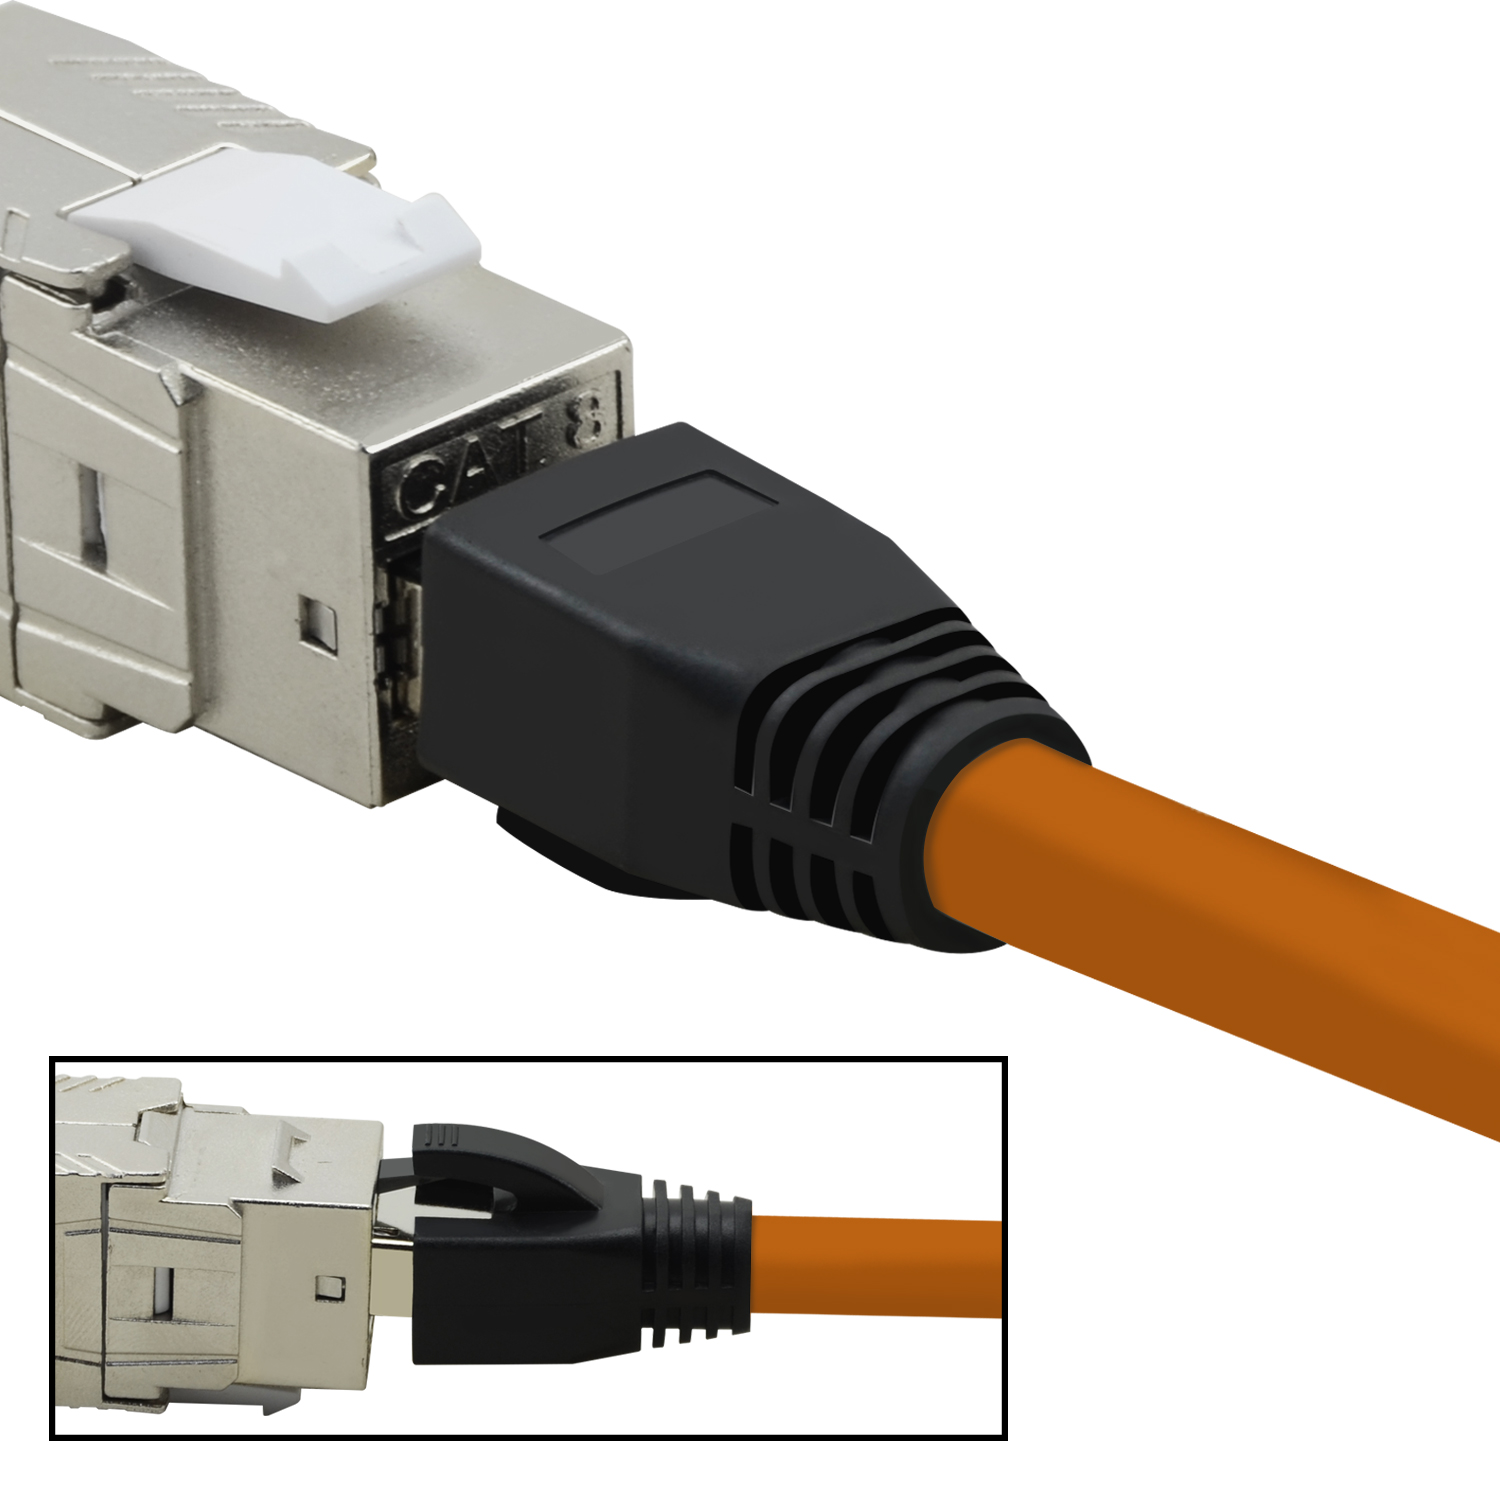 2m 40 Netzwerkkabel, orange, S/FTP m Patchkabel / GBit, 10er TPFNET Netzwerkkabel Pack 2